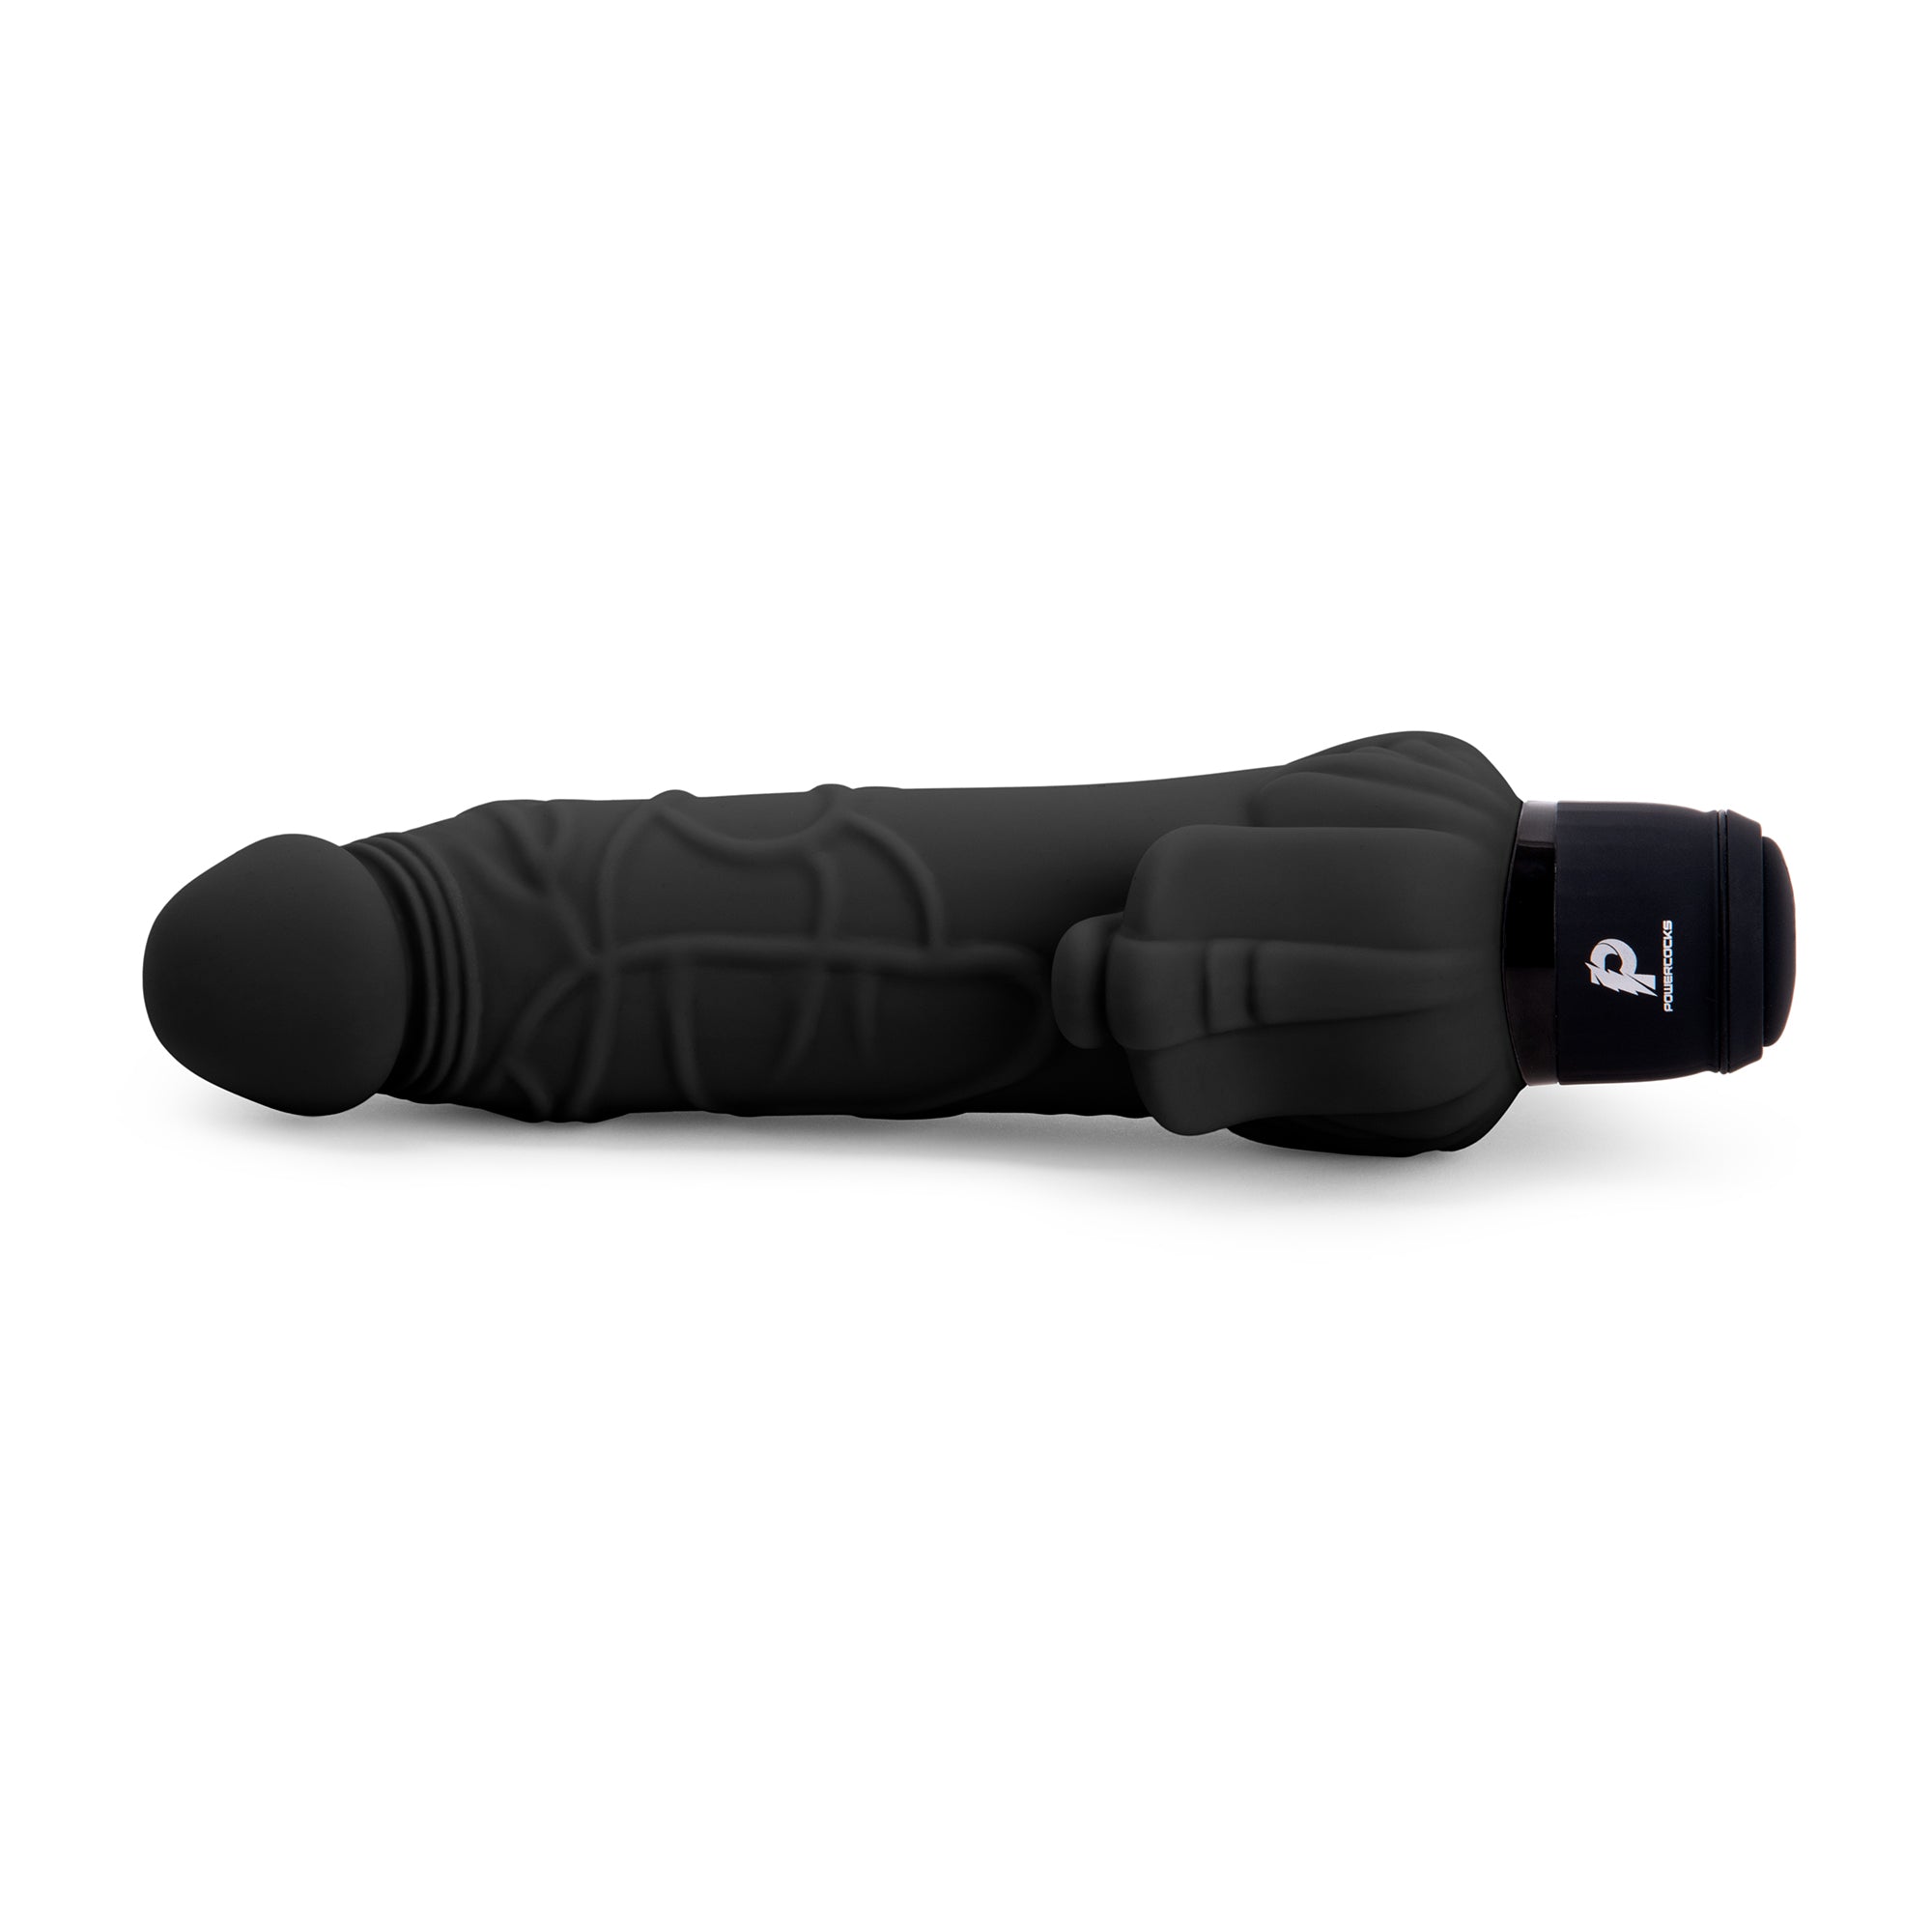 7" Realistic Vibrator with Clitoral Stimulator Black